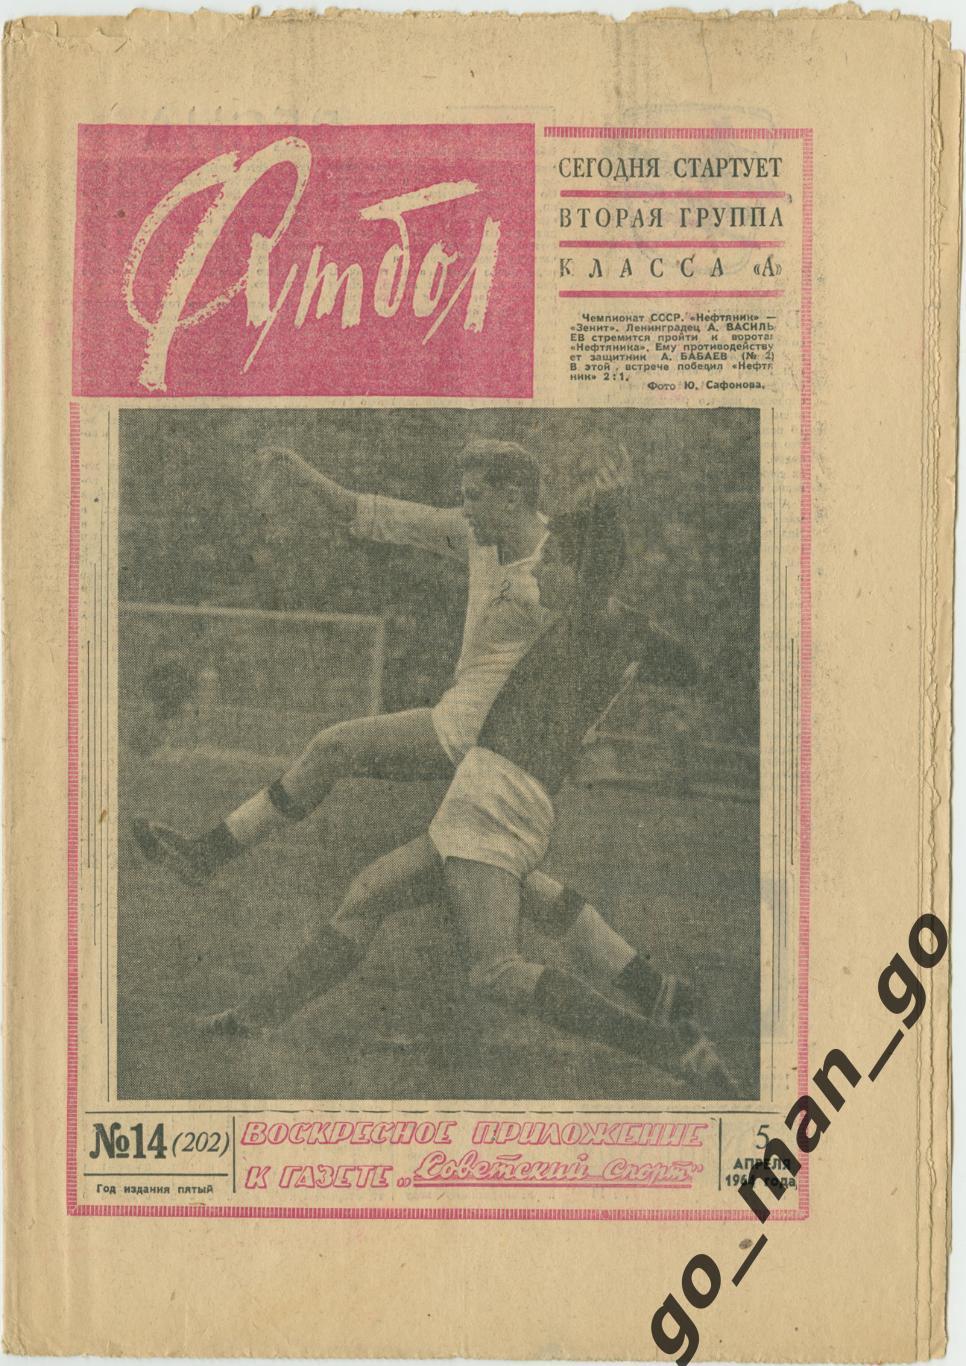 Еженедельник Футбол 1964, № 14.